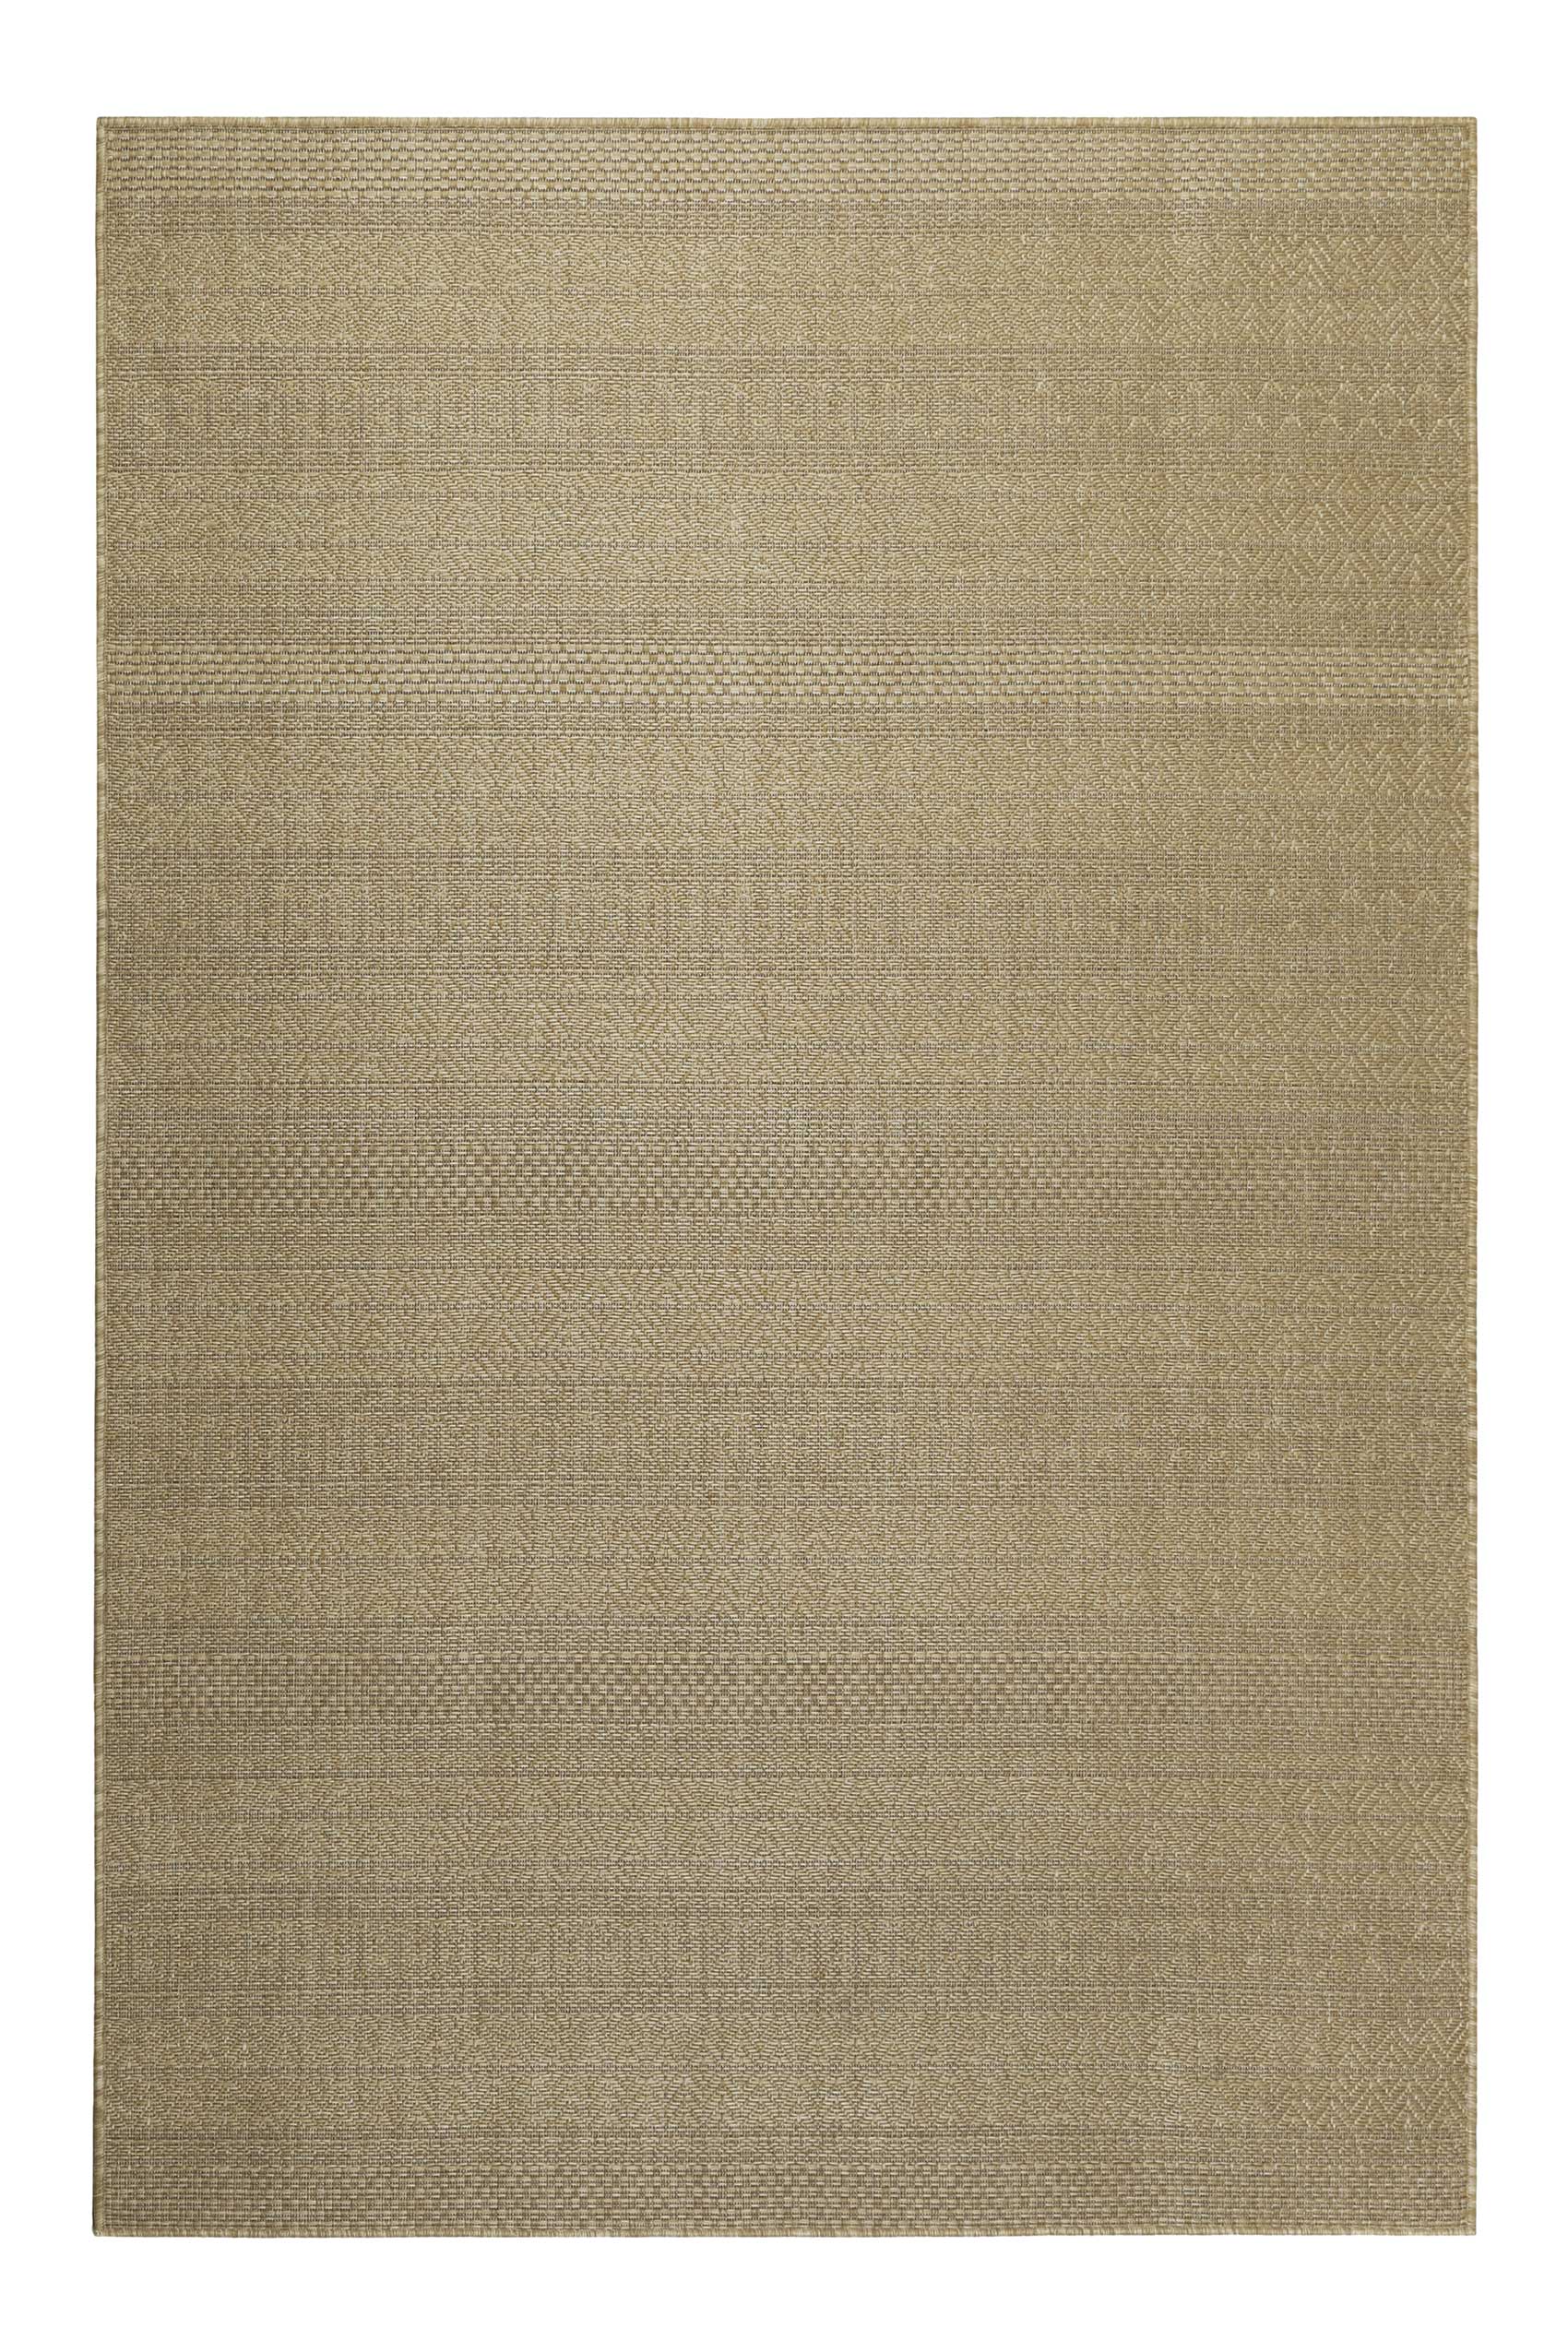 Tapis interieur/exterieur beige sable avec motif 133x200